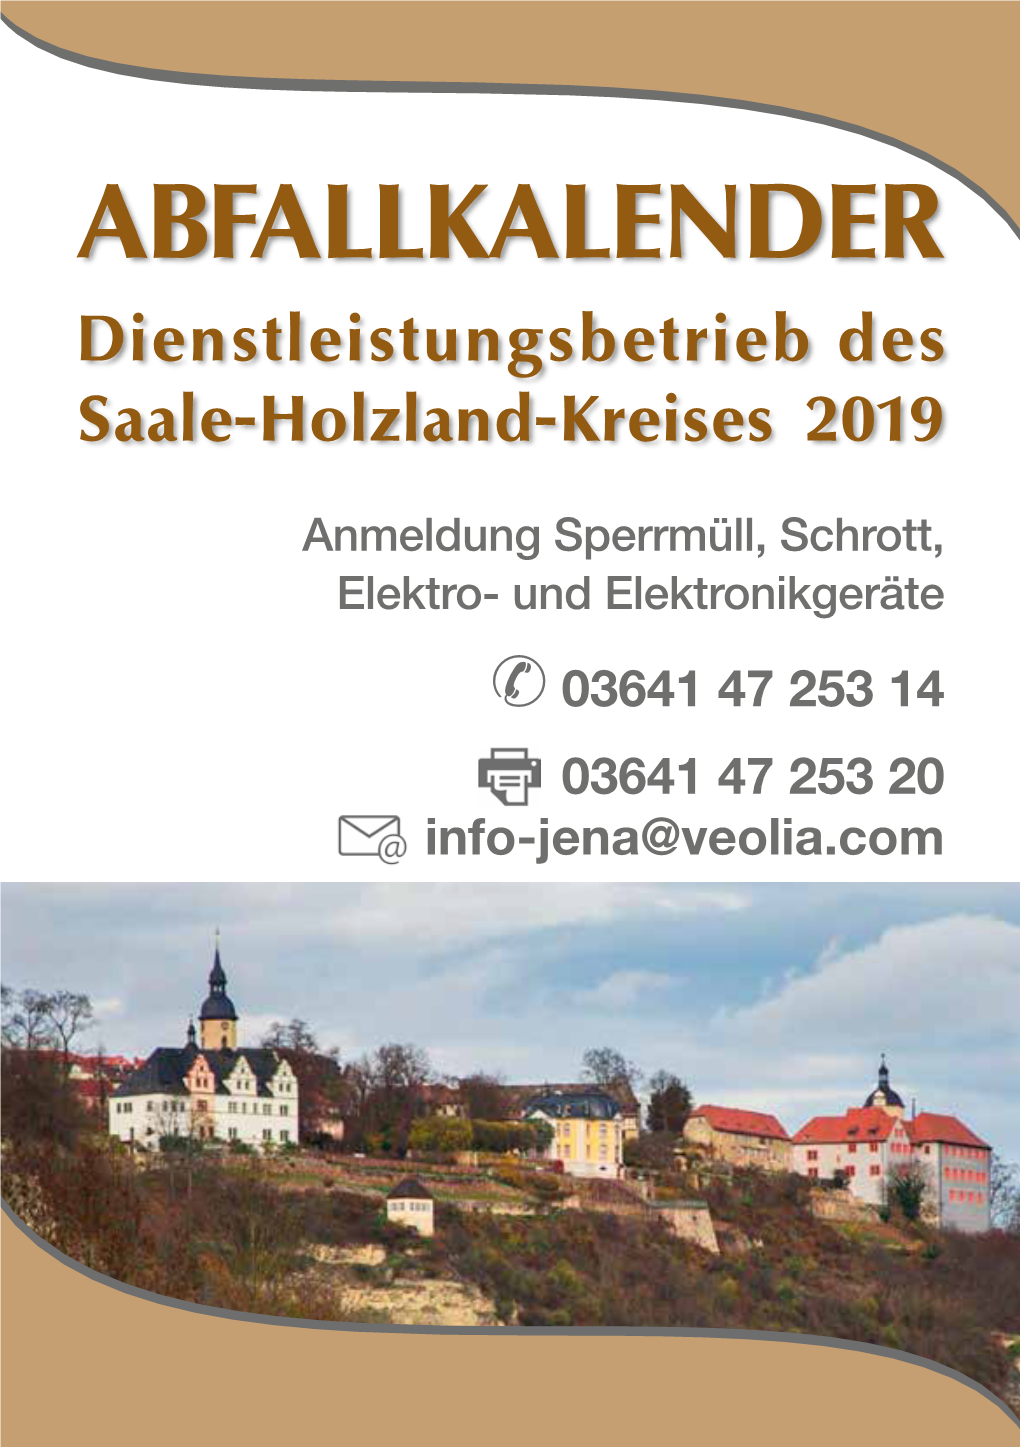 ABFALLKALENDER Dienstleistungsbetrieb Des Saale-Holzland-Kreises 2019